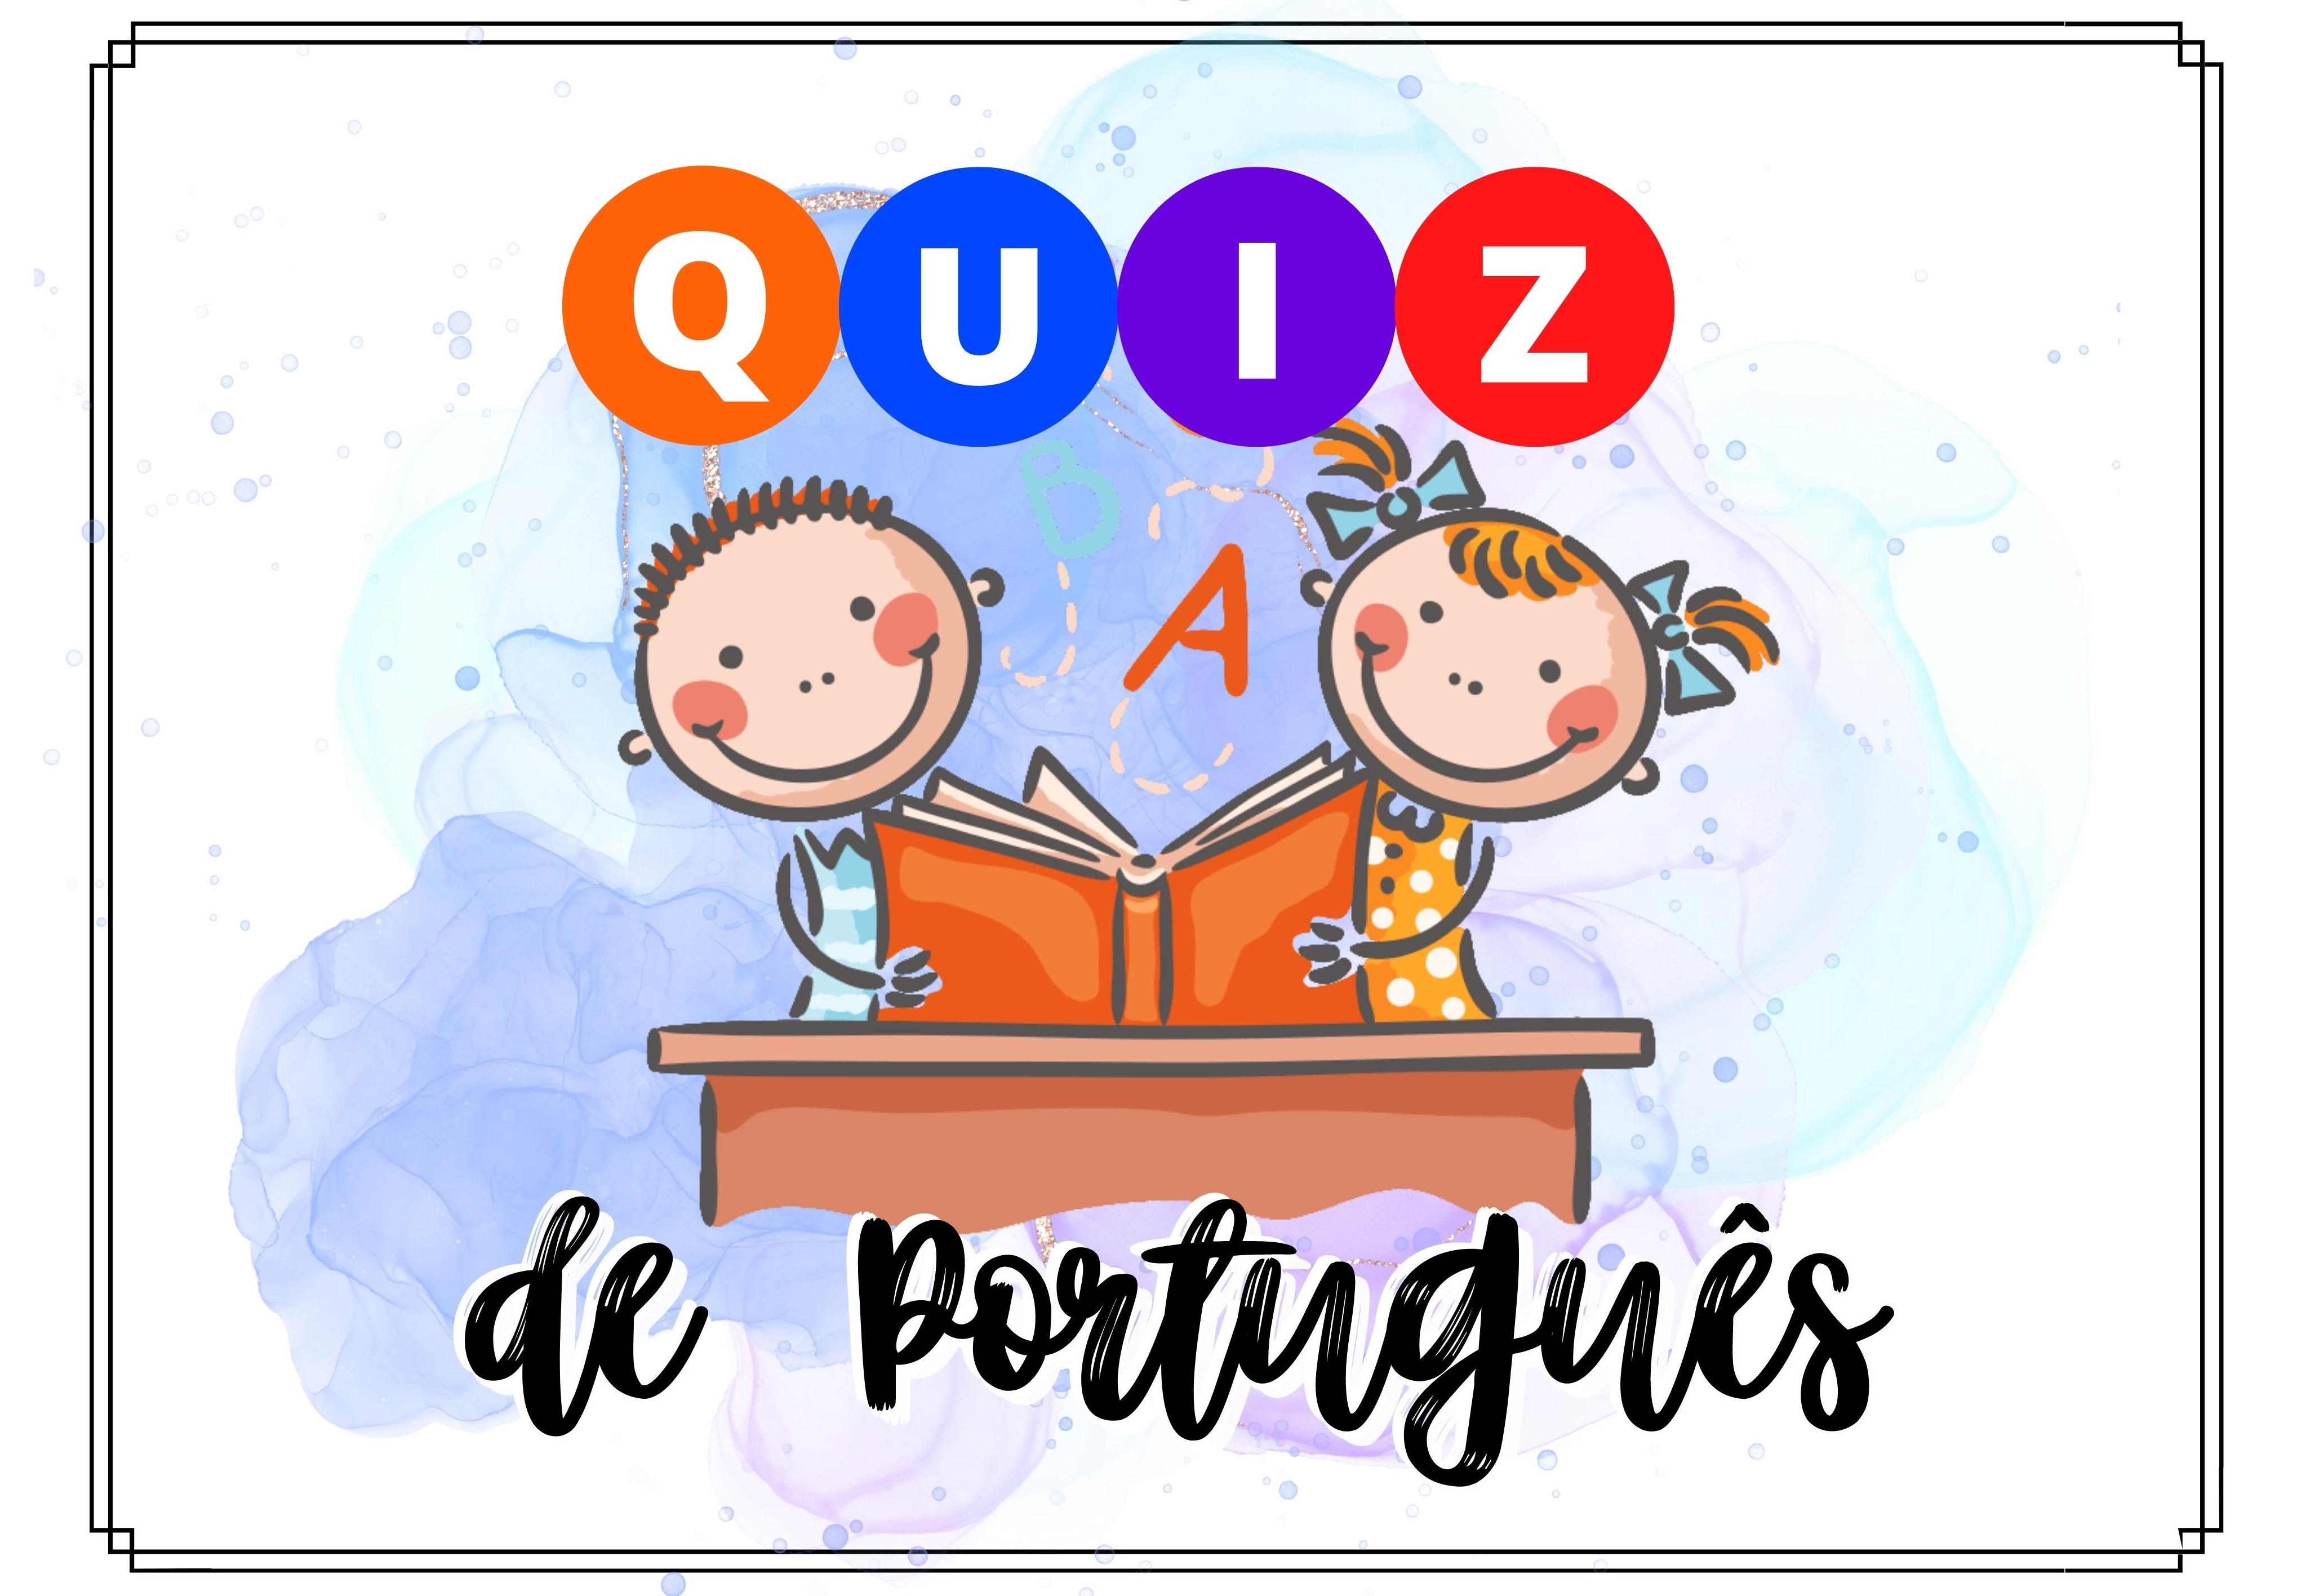 Quiz  20 Perguntas e Respostas de Português - quiz de Português